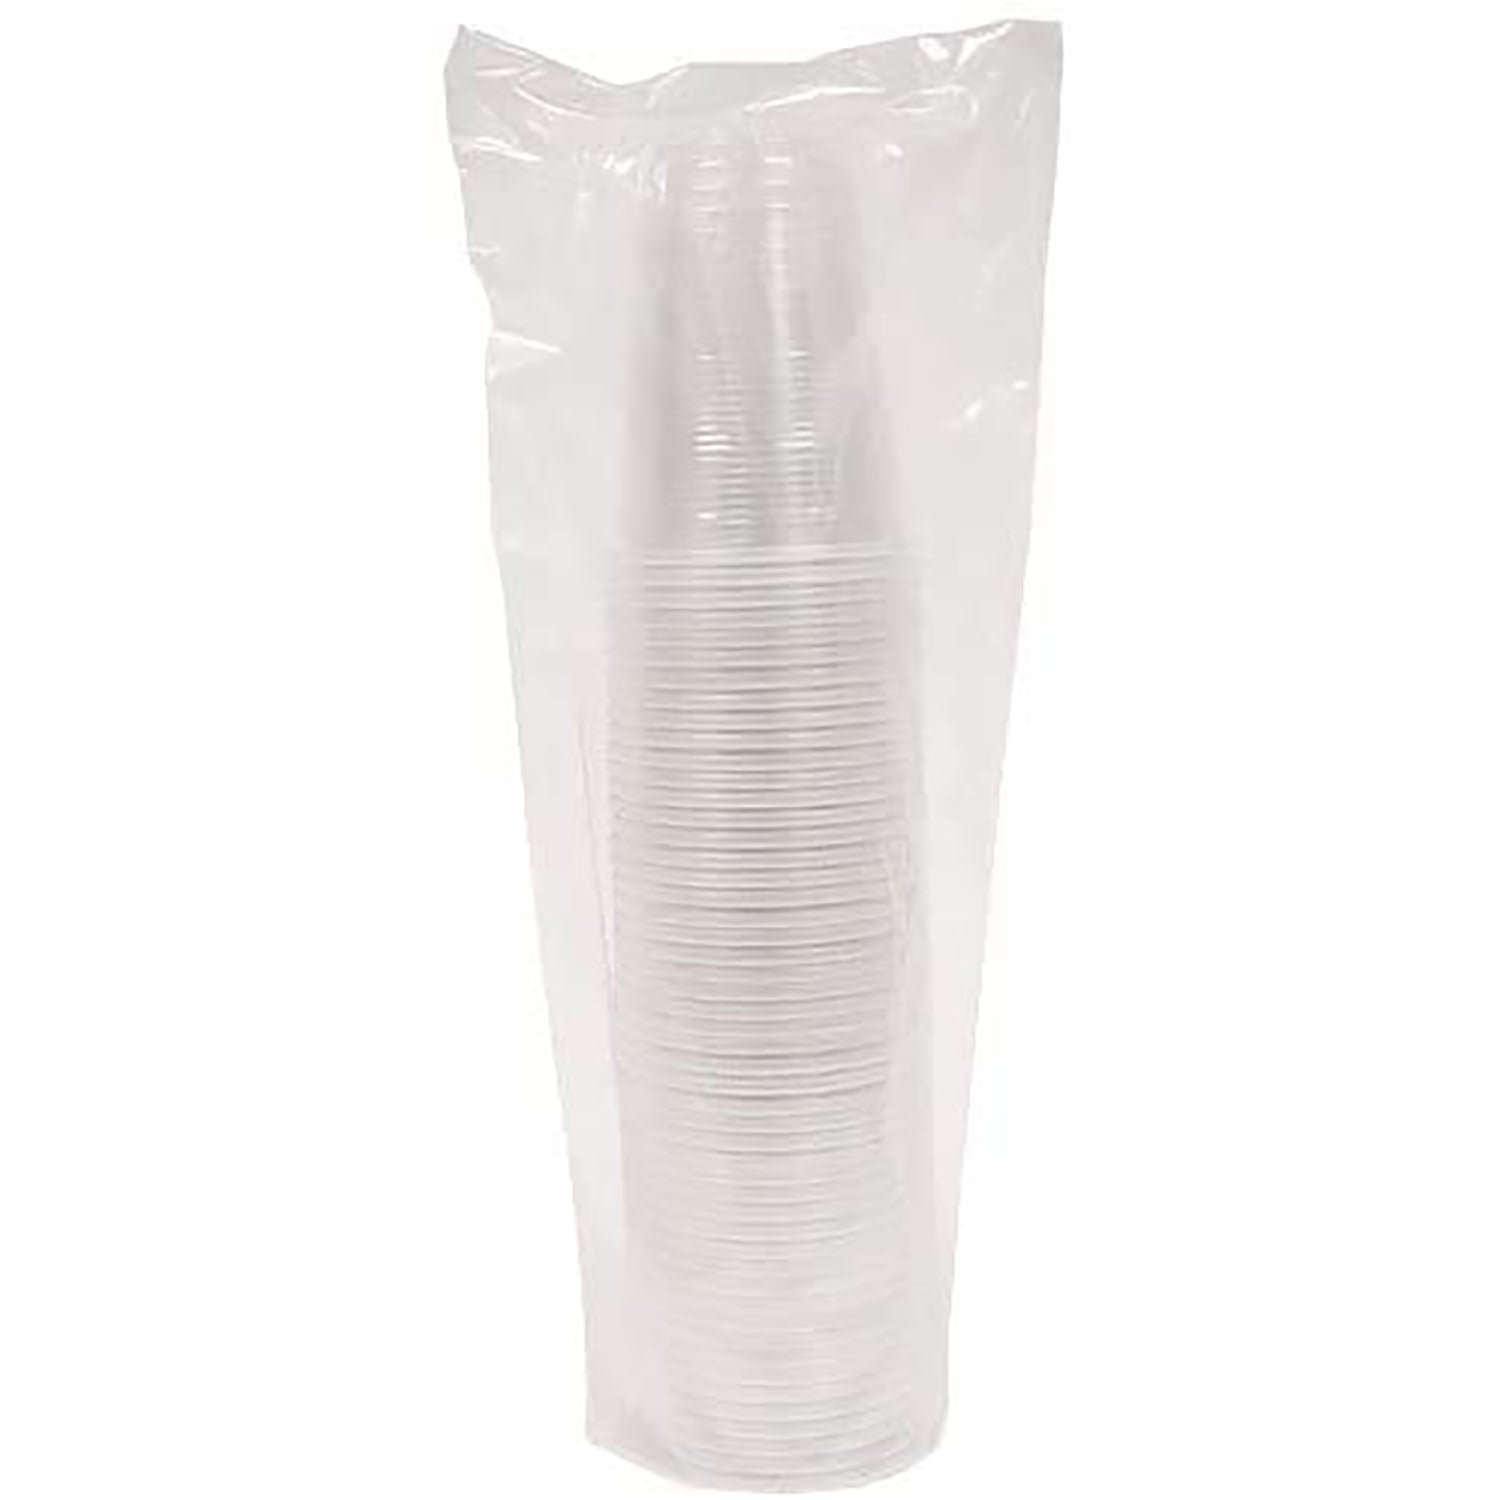 Soft Plastic Cups - 12 oz. - Translucent - Wholesale - Pakit Products